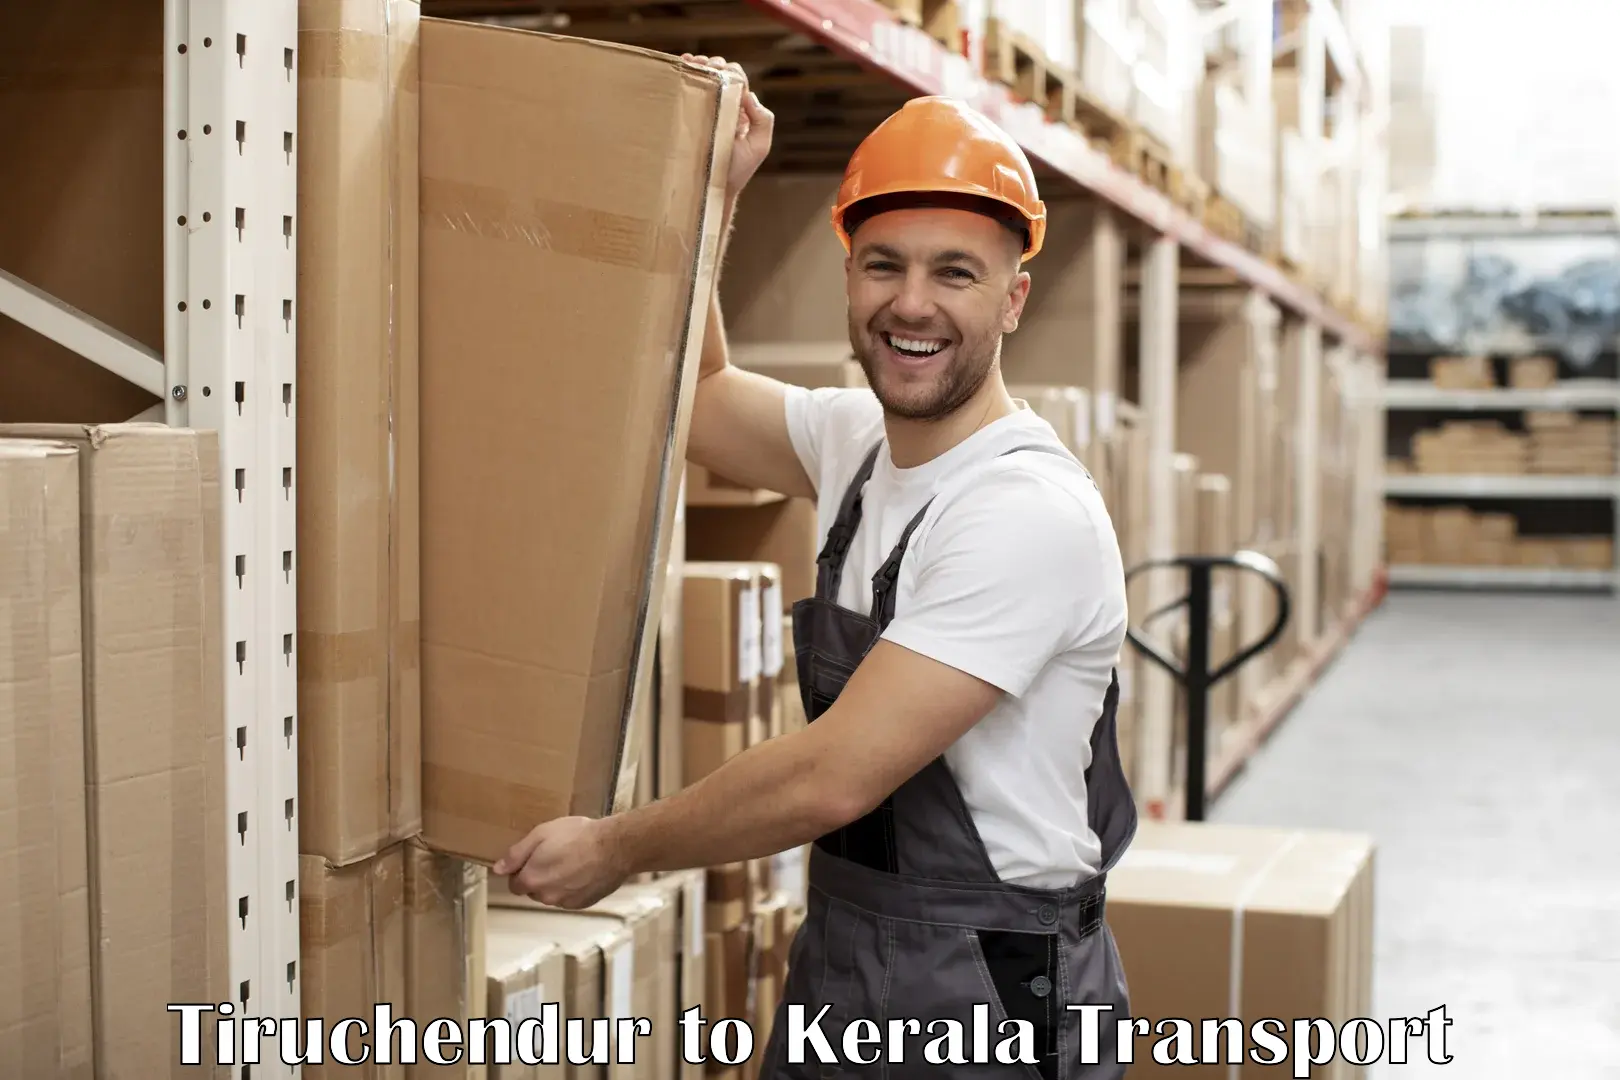 Container transport service Tiruchendur to Kalluvathukkal